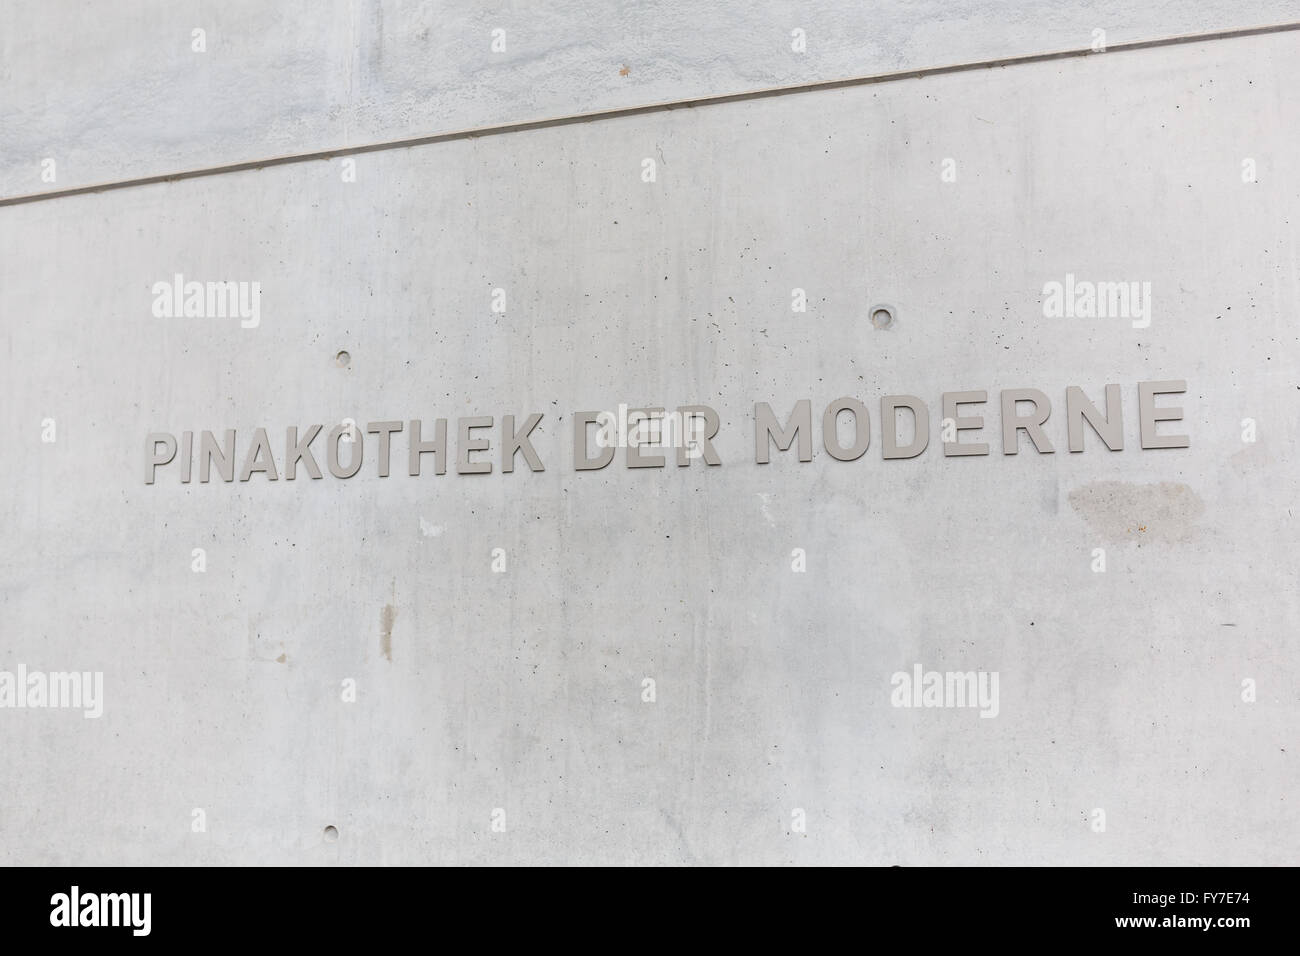 Cartel en la pared de la Pinakothek der Moderne museum, situado en el centro de la ciudad de Munich. Foto de stock